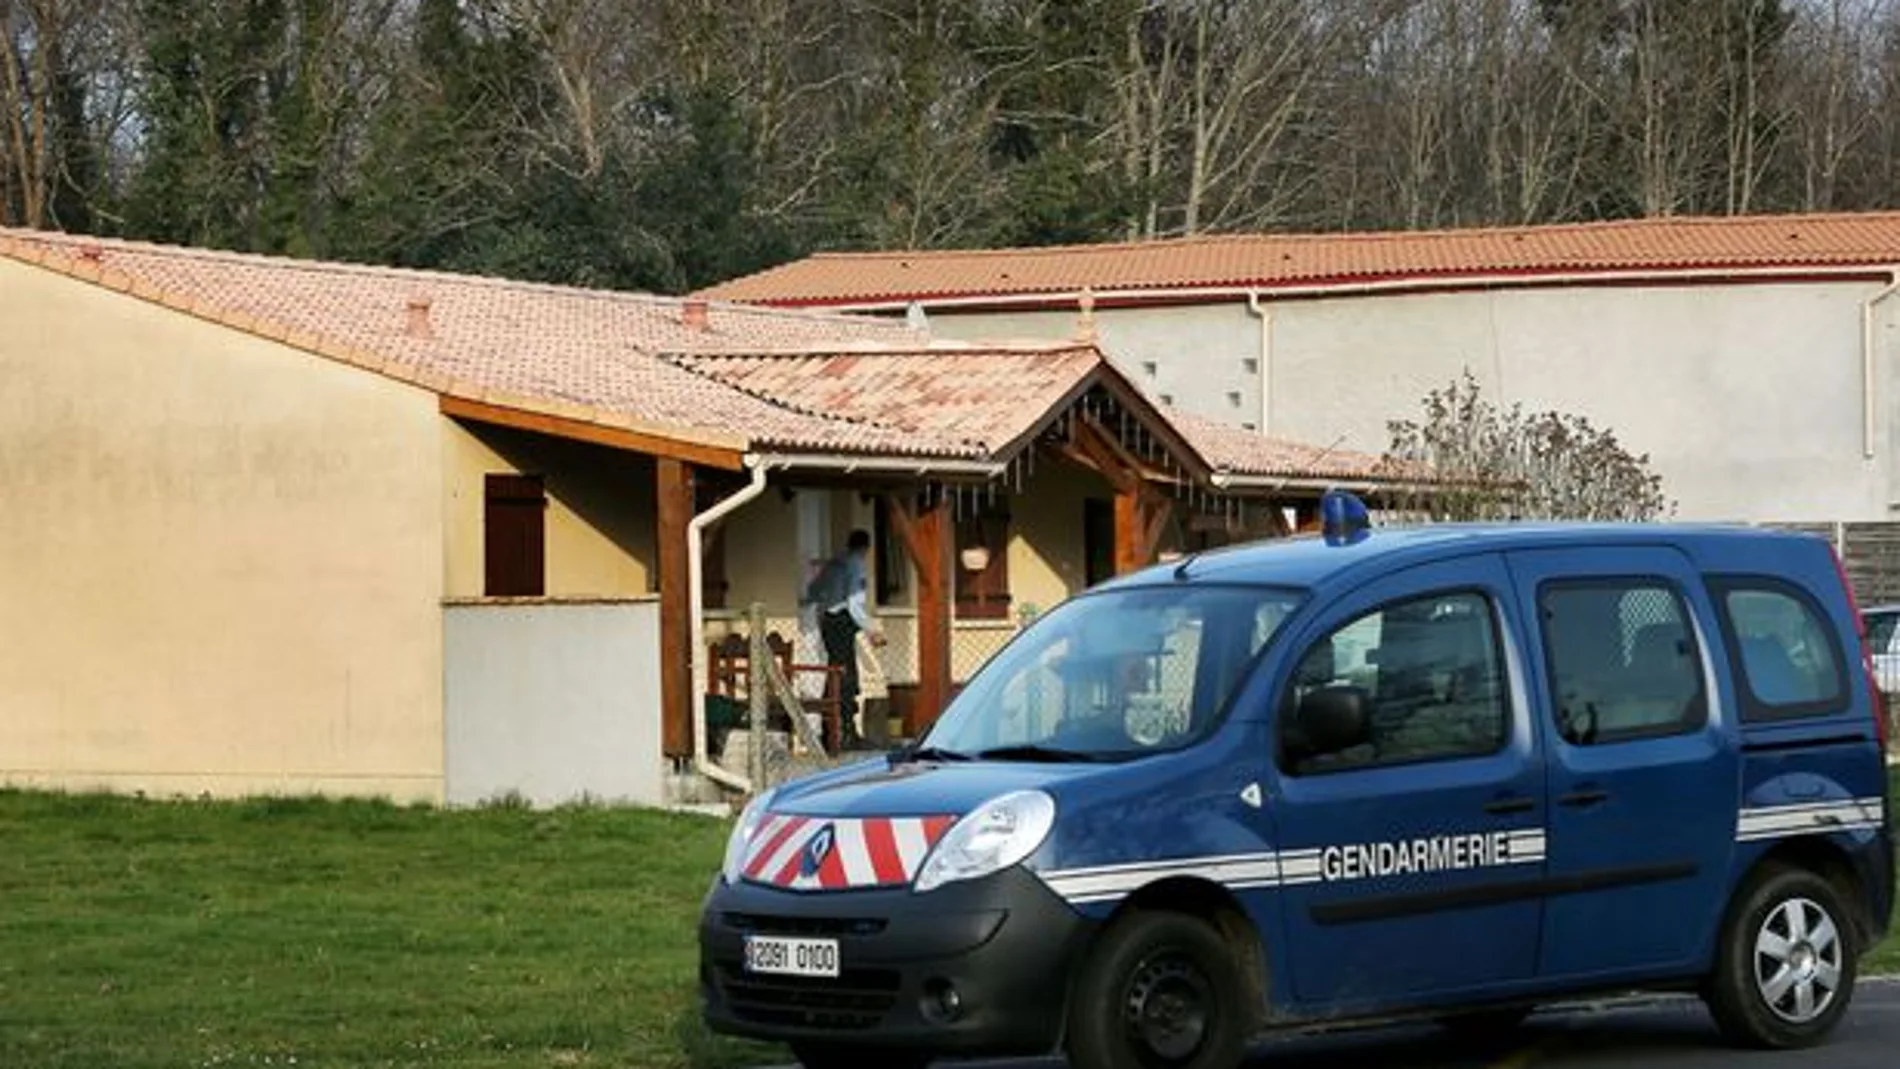 Una patrulla de la Gendarmería junto a la casa en la que fueron localizados los cuerpos